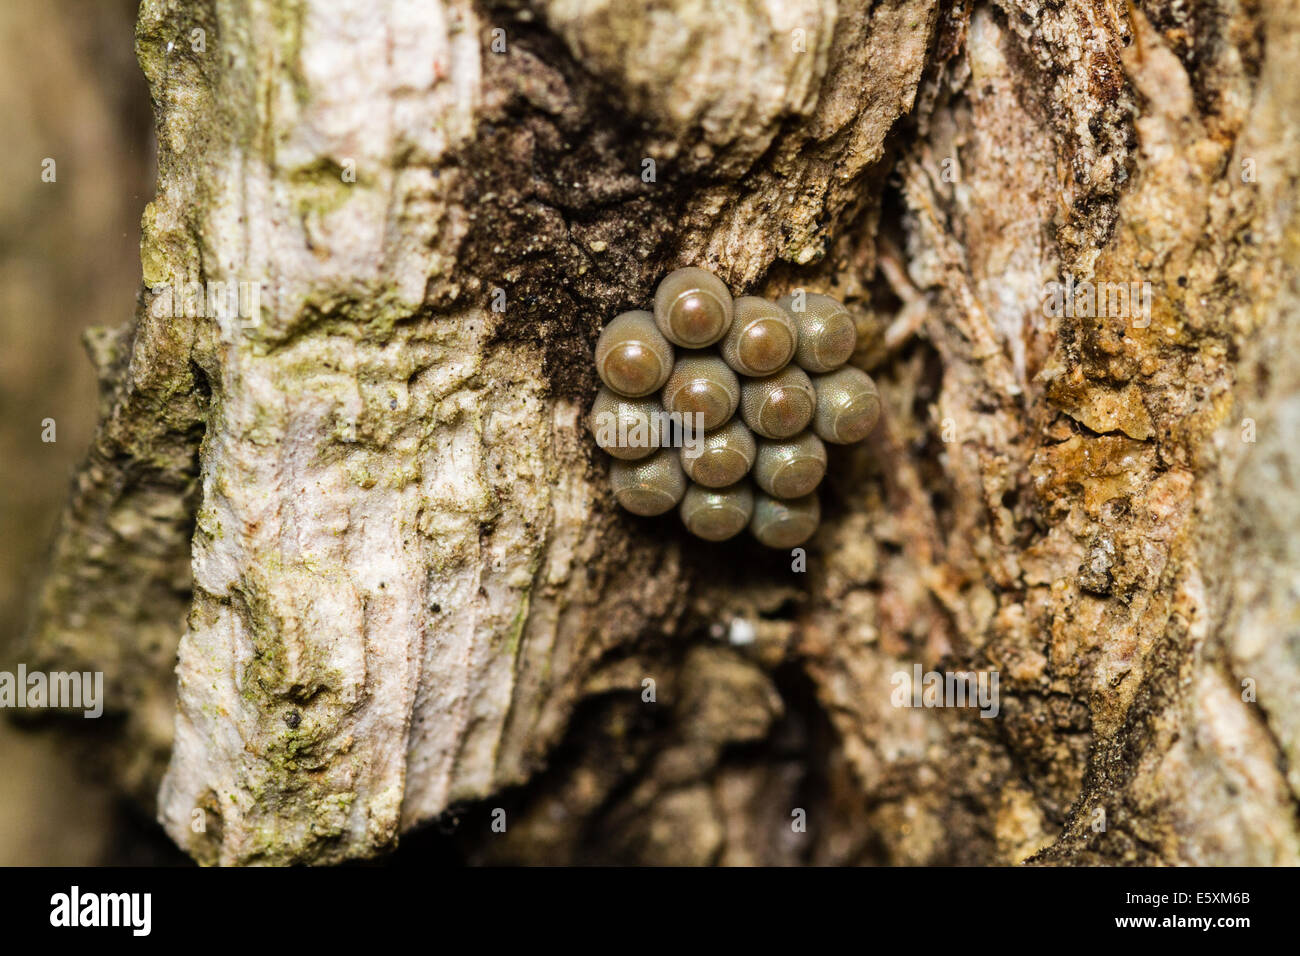 Stinkbug Egg Cluster Macro photo Stock Photo